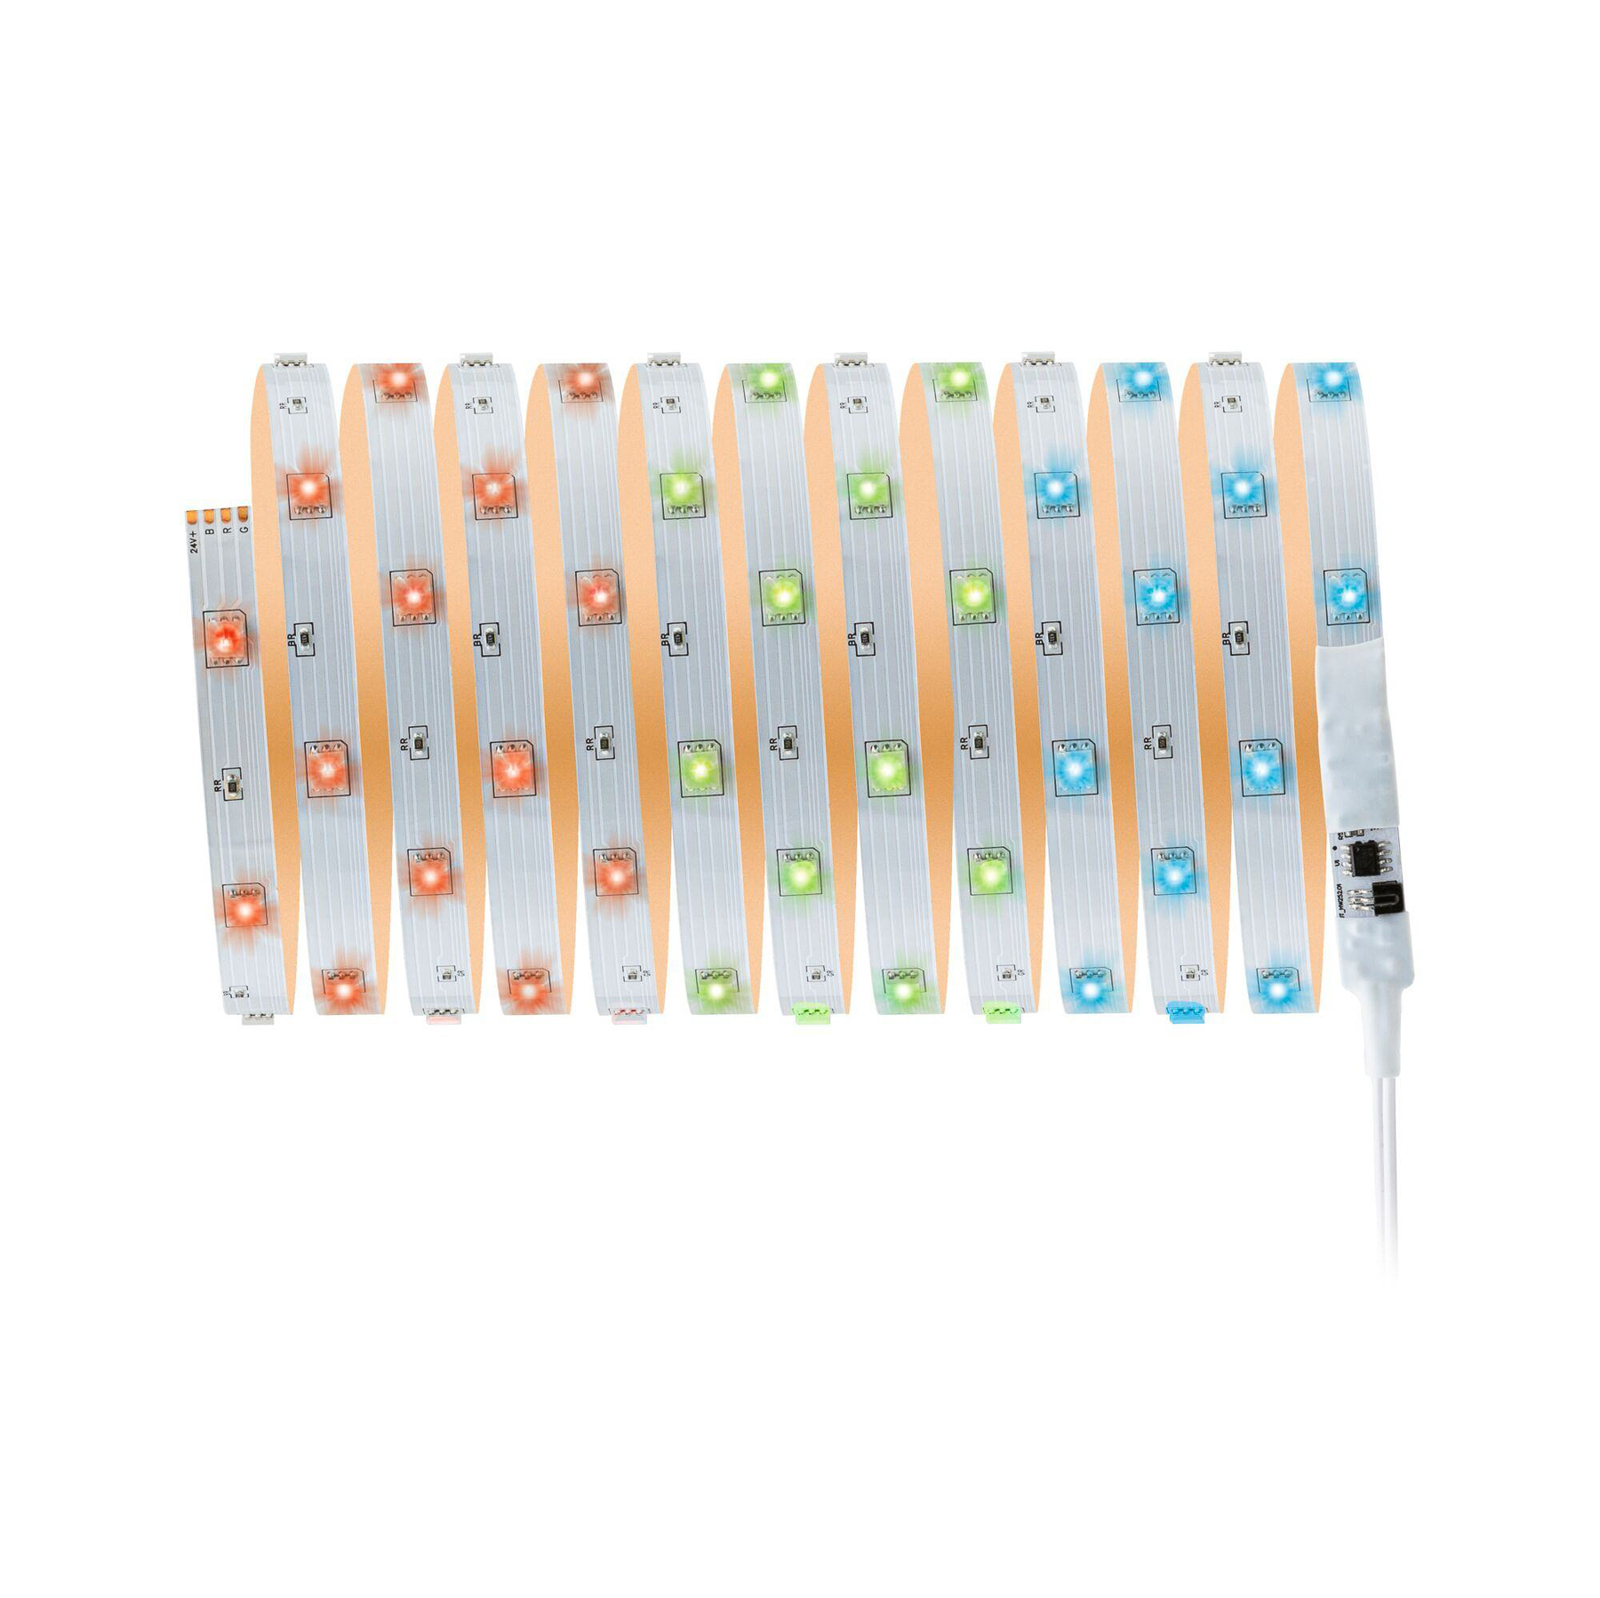 Paulmann LED szalag szett TIP, fehér, műanyag, RGB, 500 cm, 500 cm